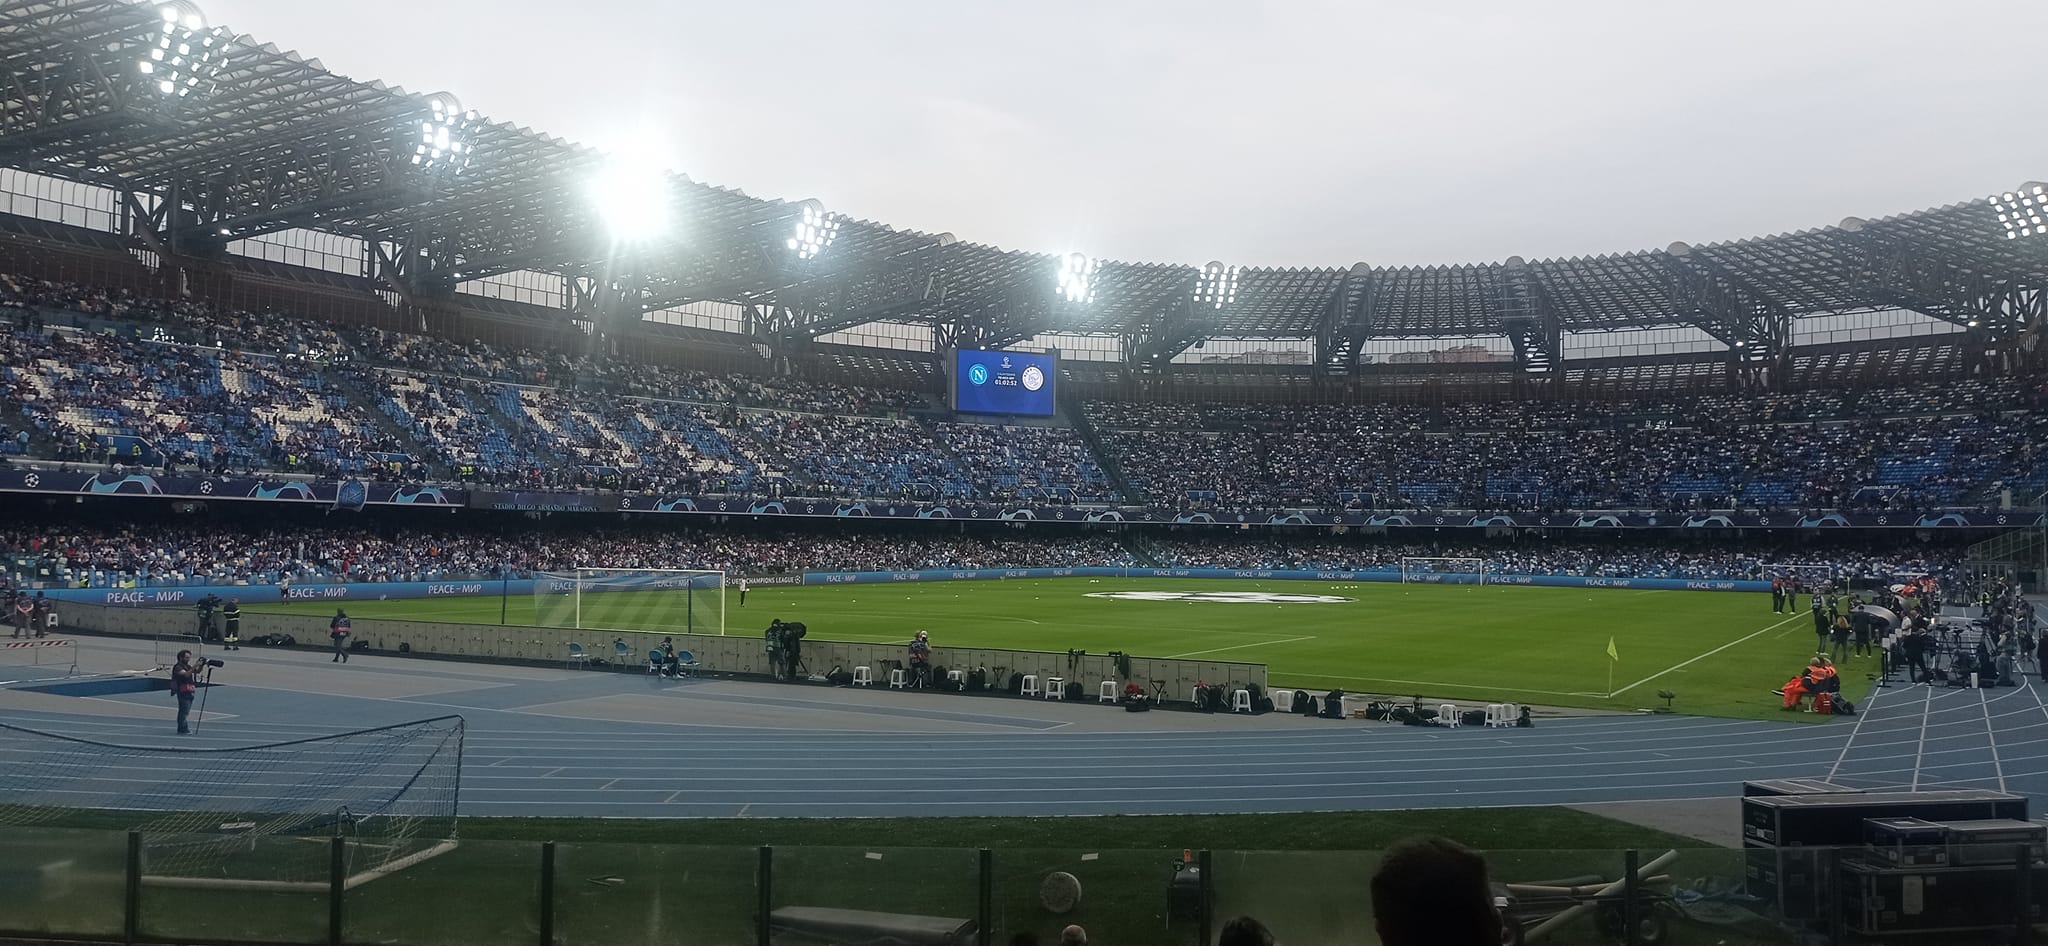 Napoli, la severa decisione della Questura nei confronti dei tifosi  |  Sport e Vai